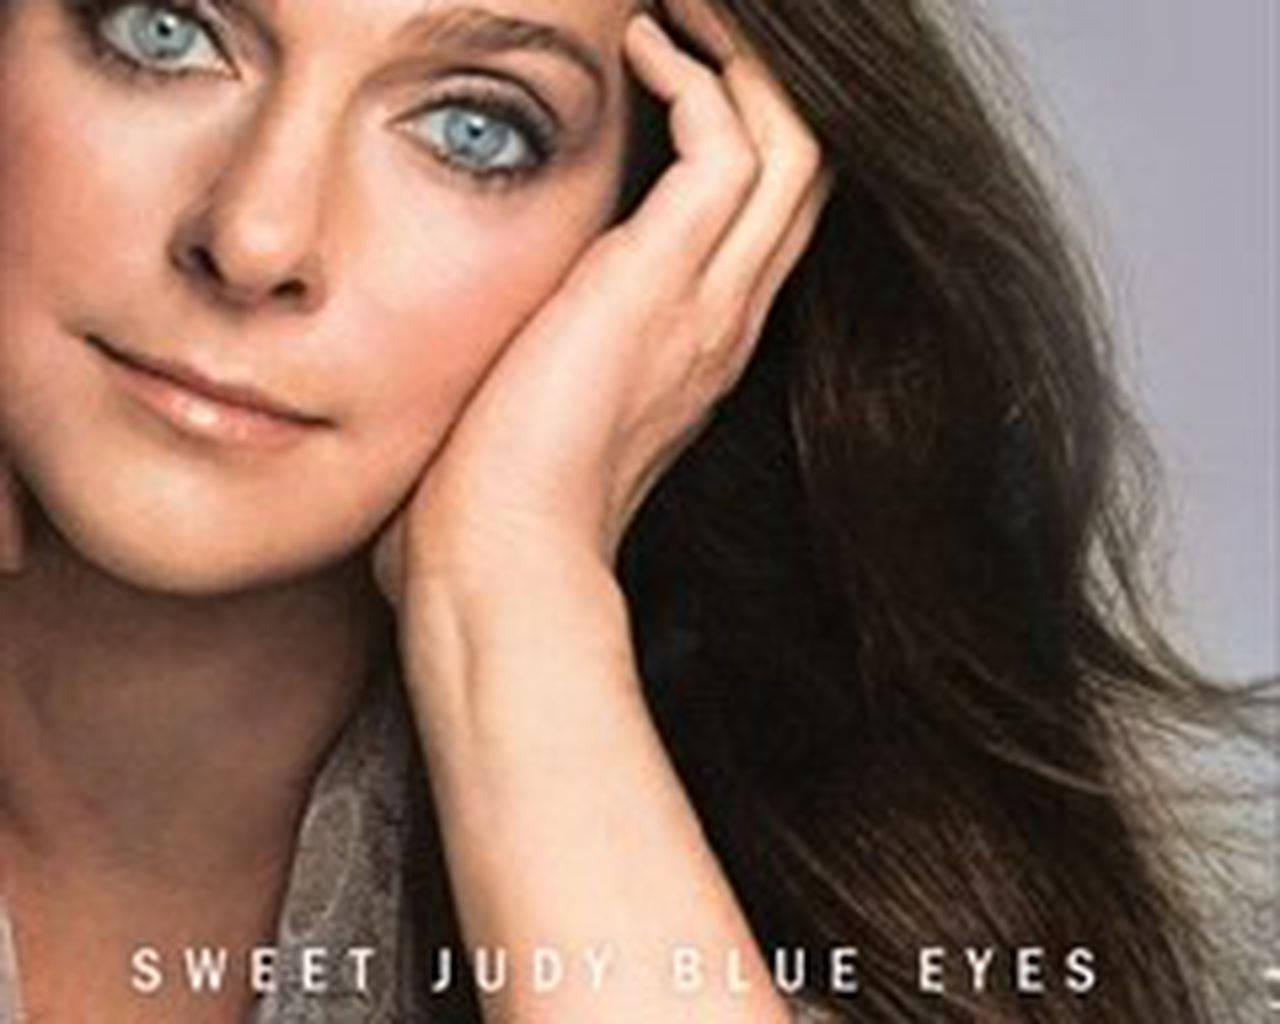 Sötajudy Blue Eyes Mitt Liv Inom Musik Av Judy Collins. Wallpaper